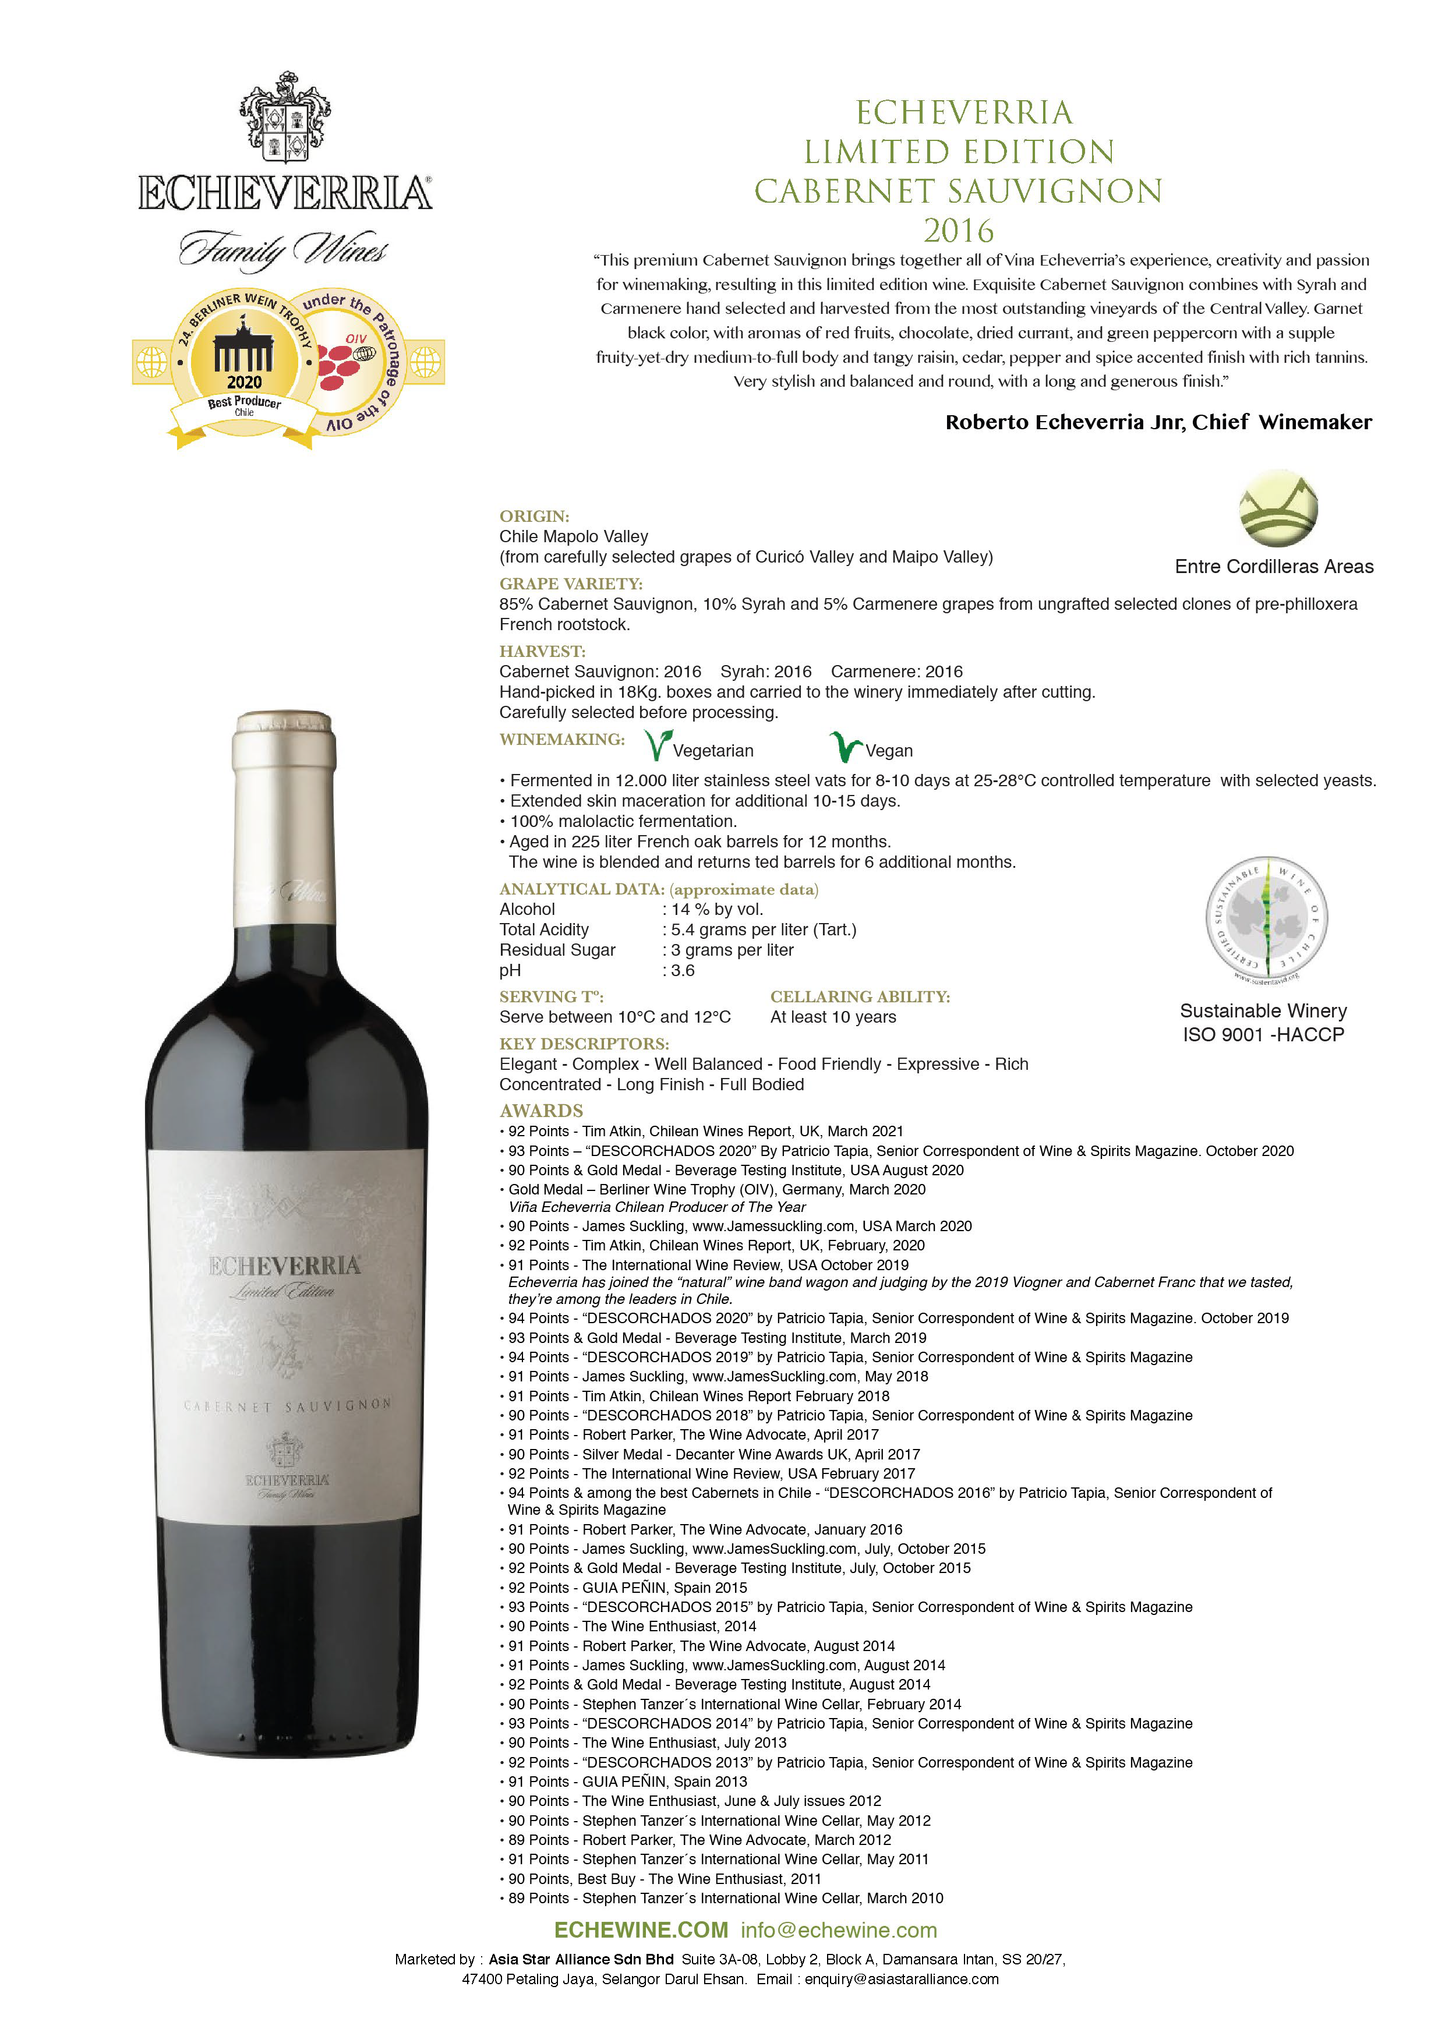 echeverria-limited-edition-cabernet-sauvignon-2016